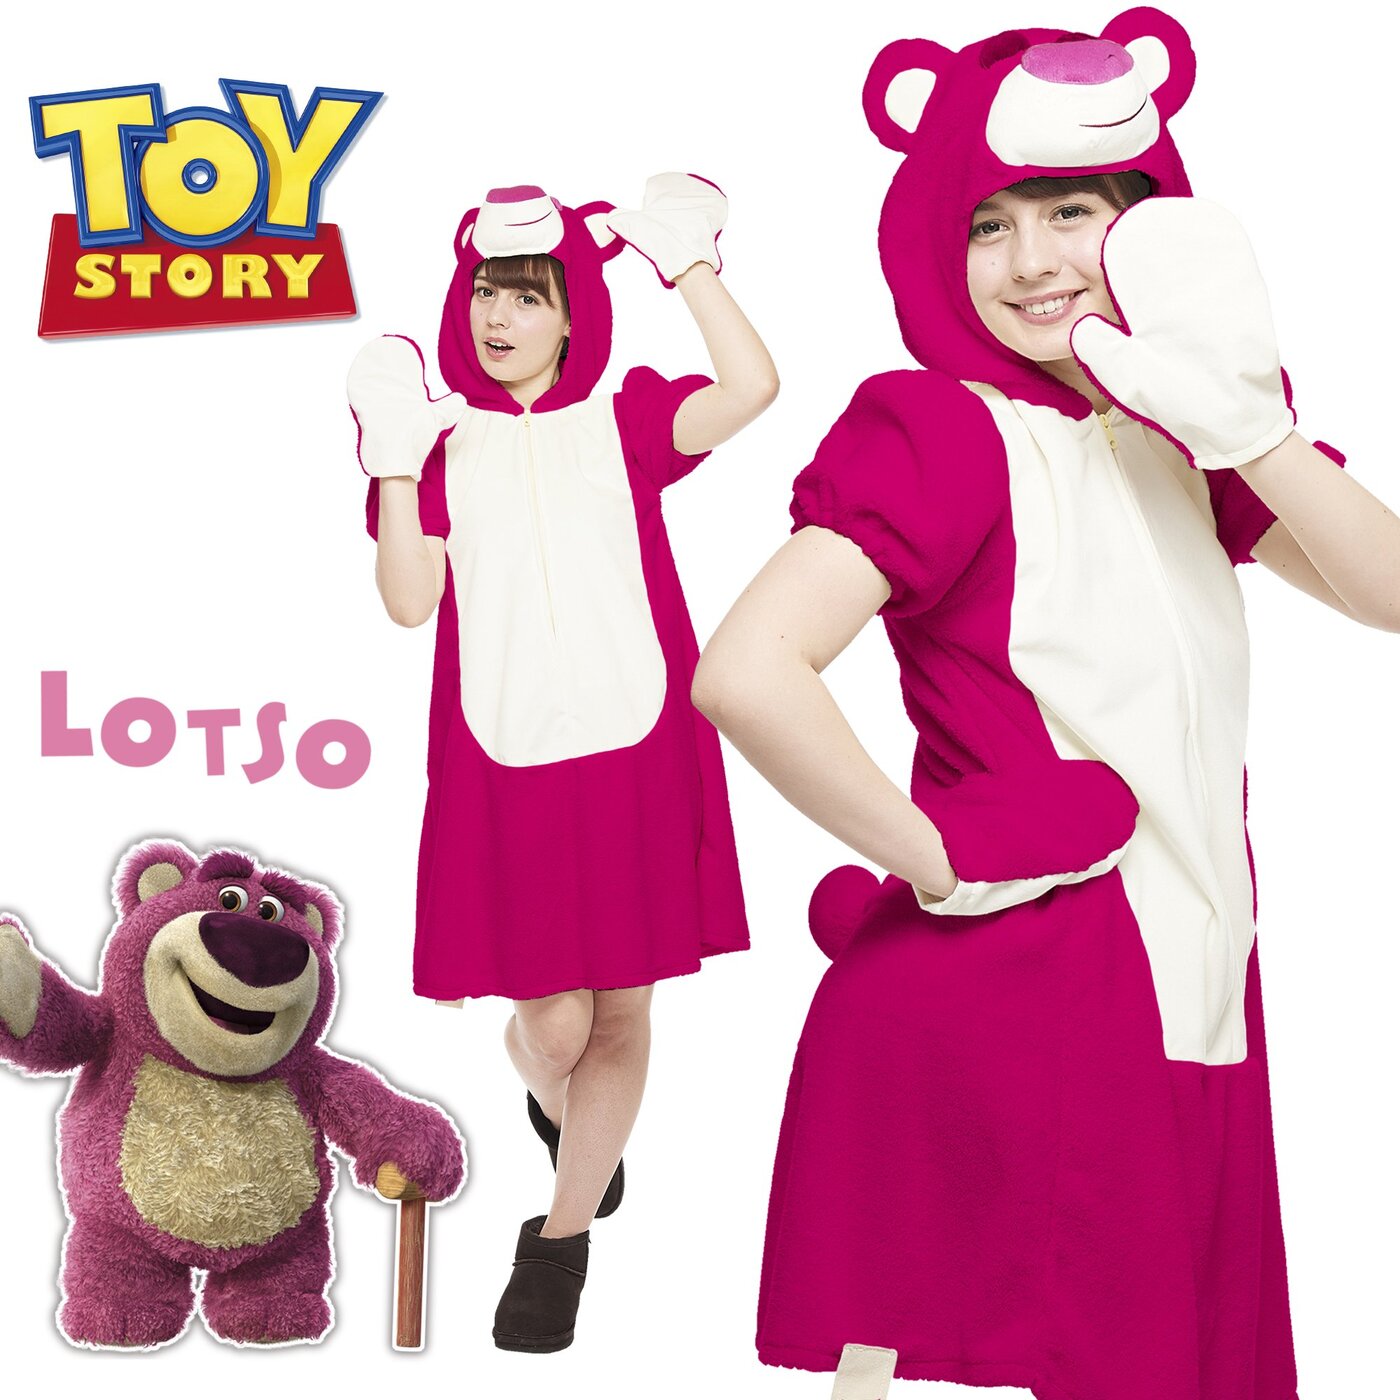 Disney Toy Story Rottsuo Costume Ladies 155cm-165cm.